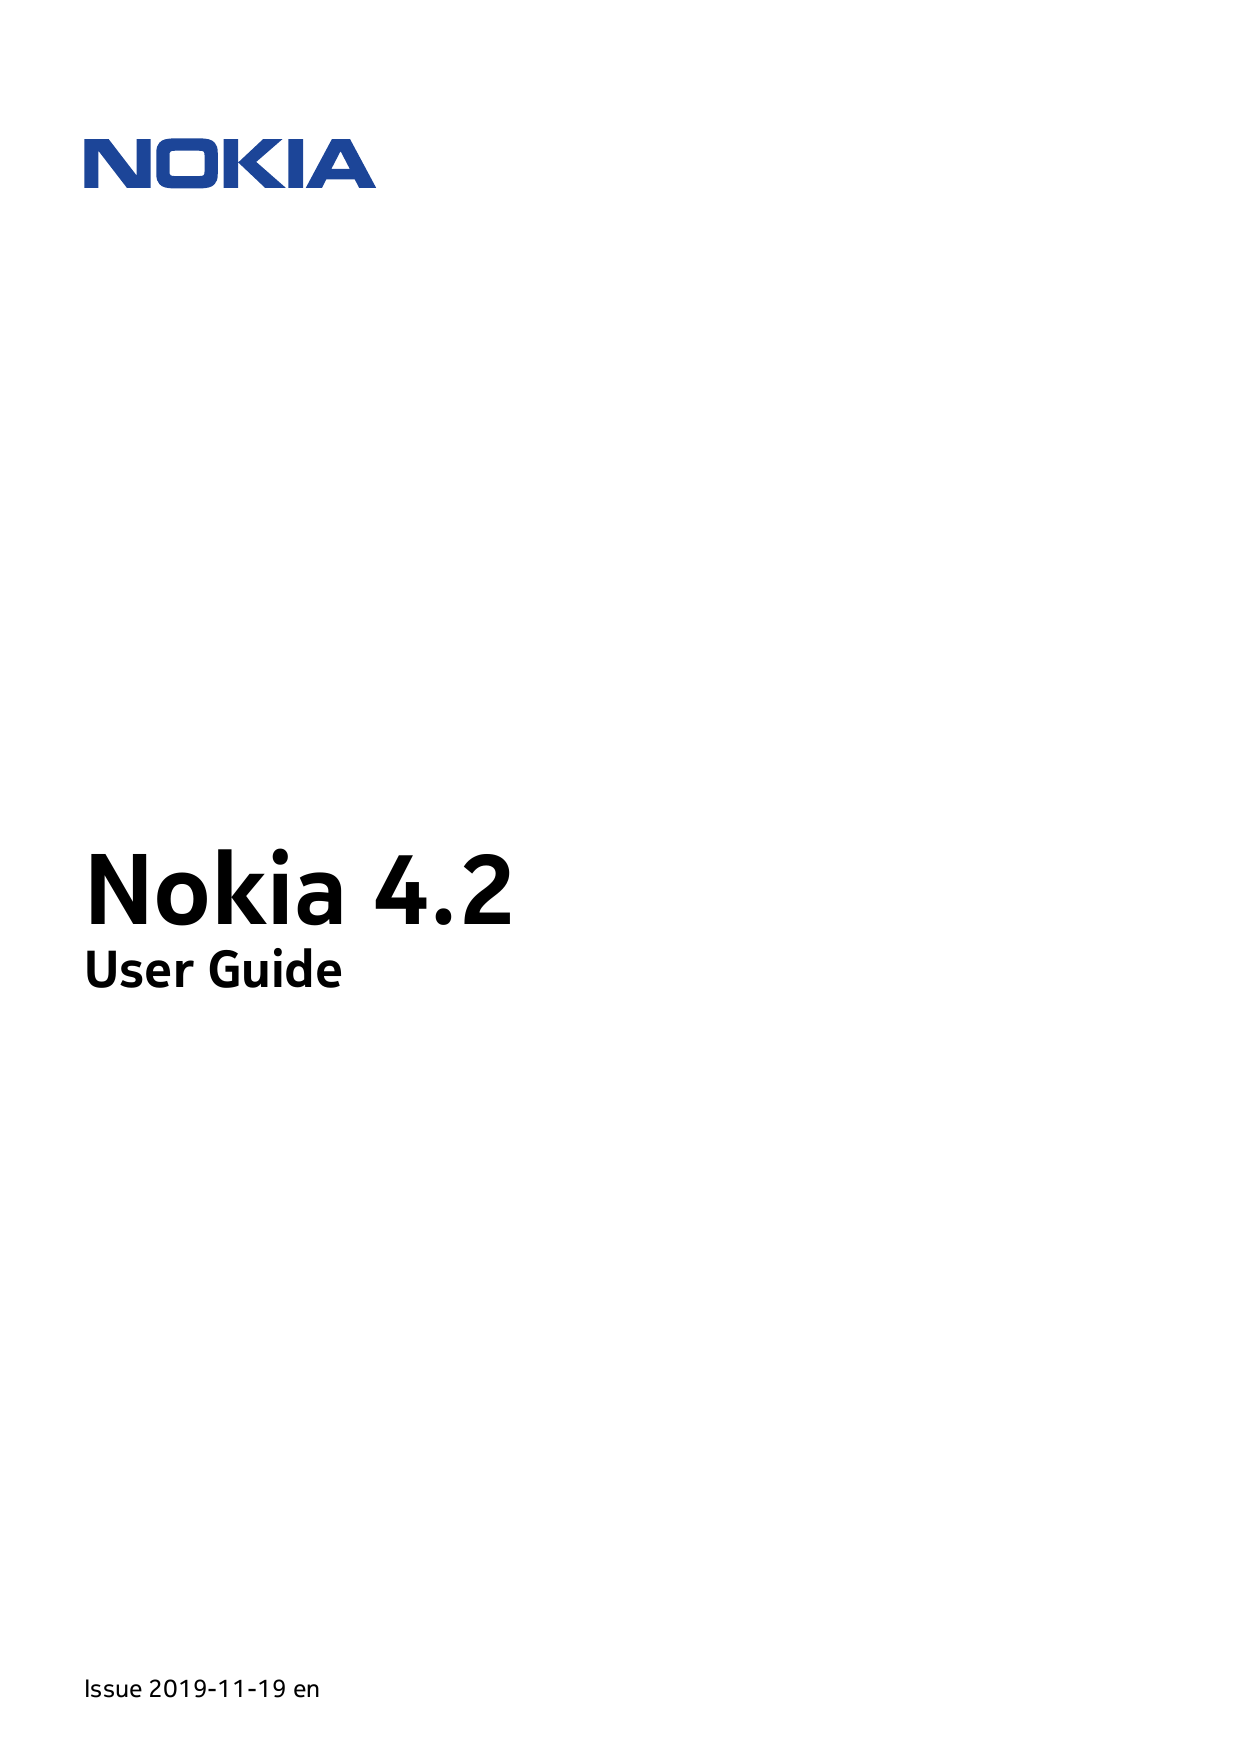 Nokia 4.2User GuideIssue 2019-11-19 en